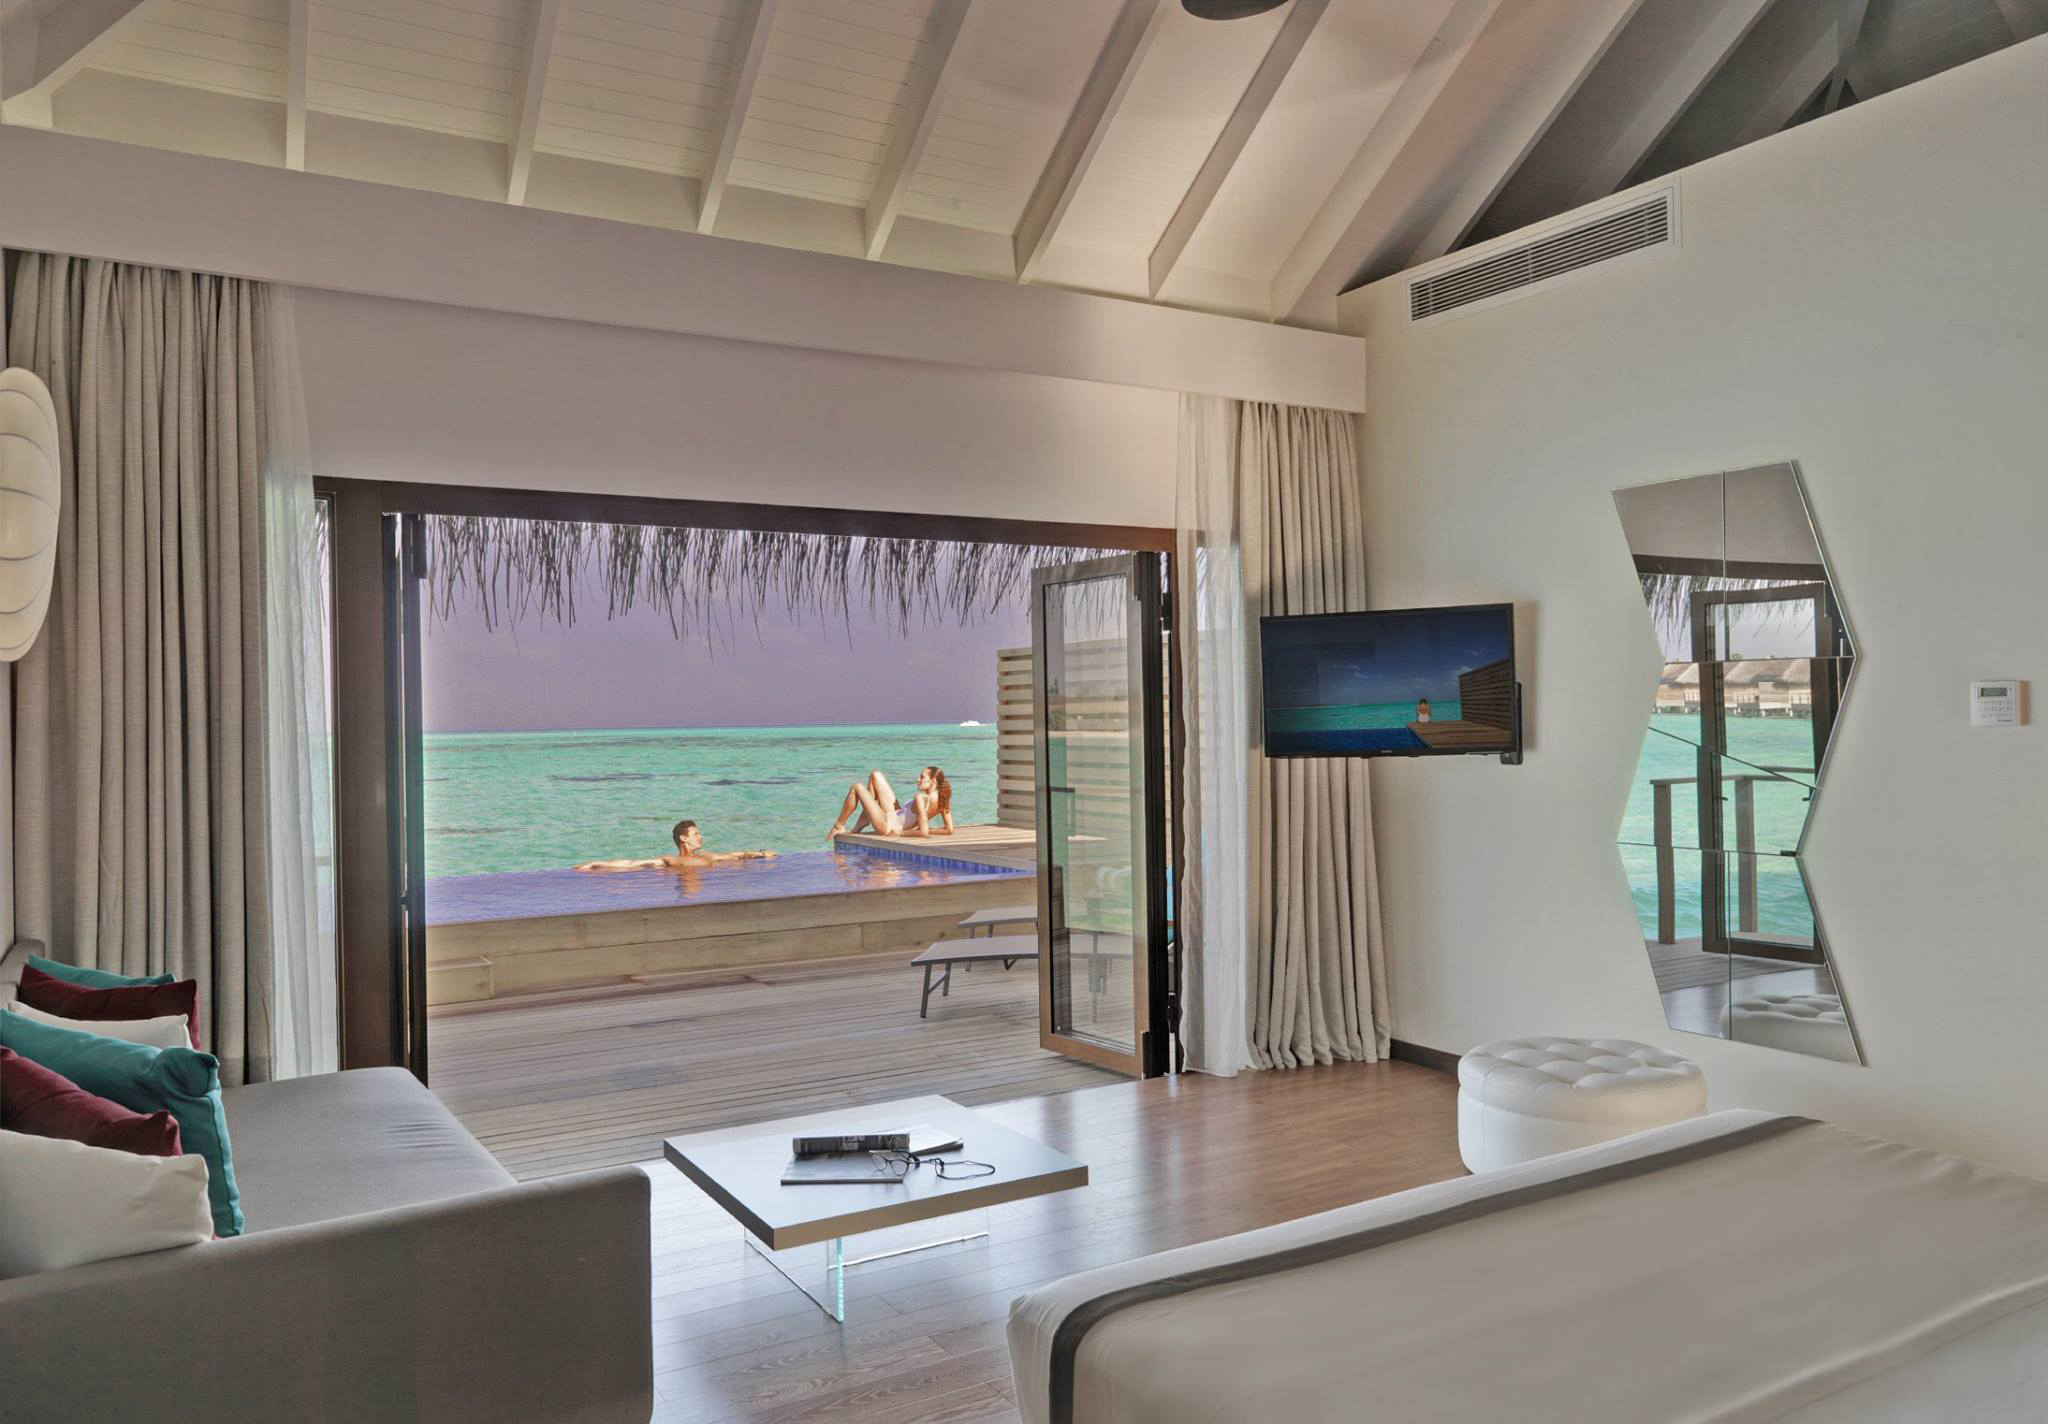 Cocoon Maldives Resort – Ookolhufinolhu, Lhaviyani Atoll, Maldives – Lagoon Overwater Suite with Pool Interior